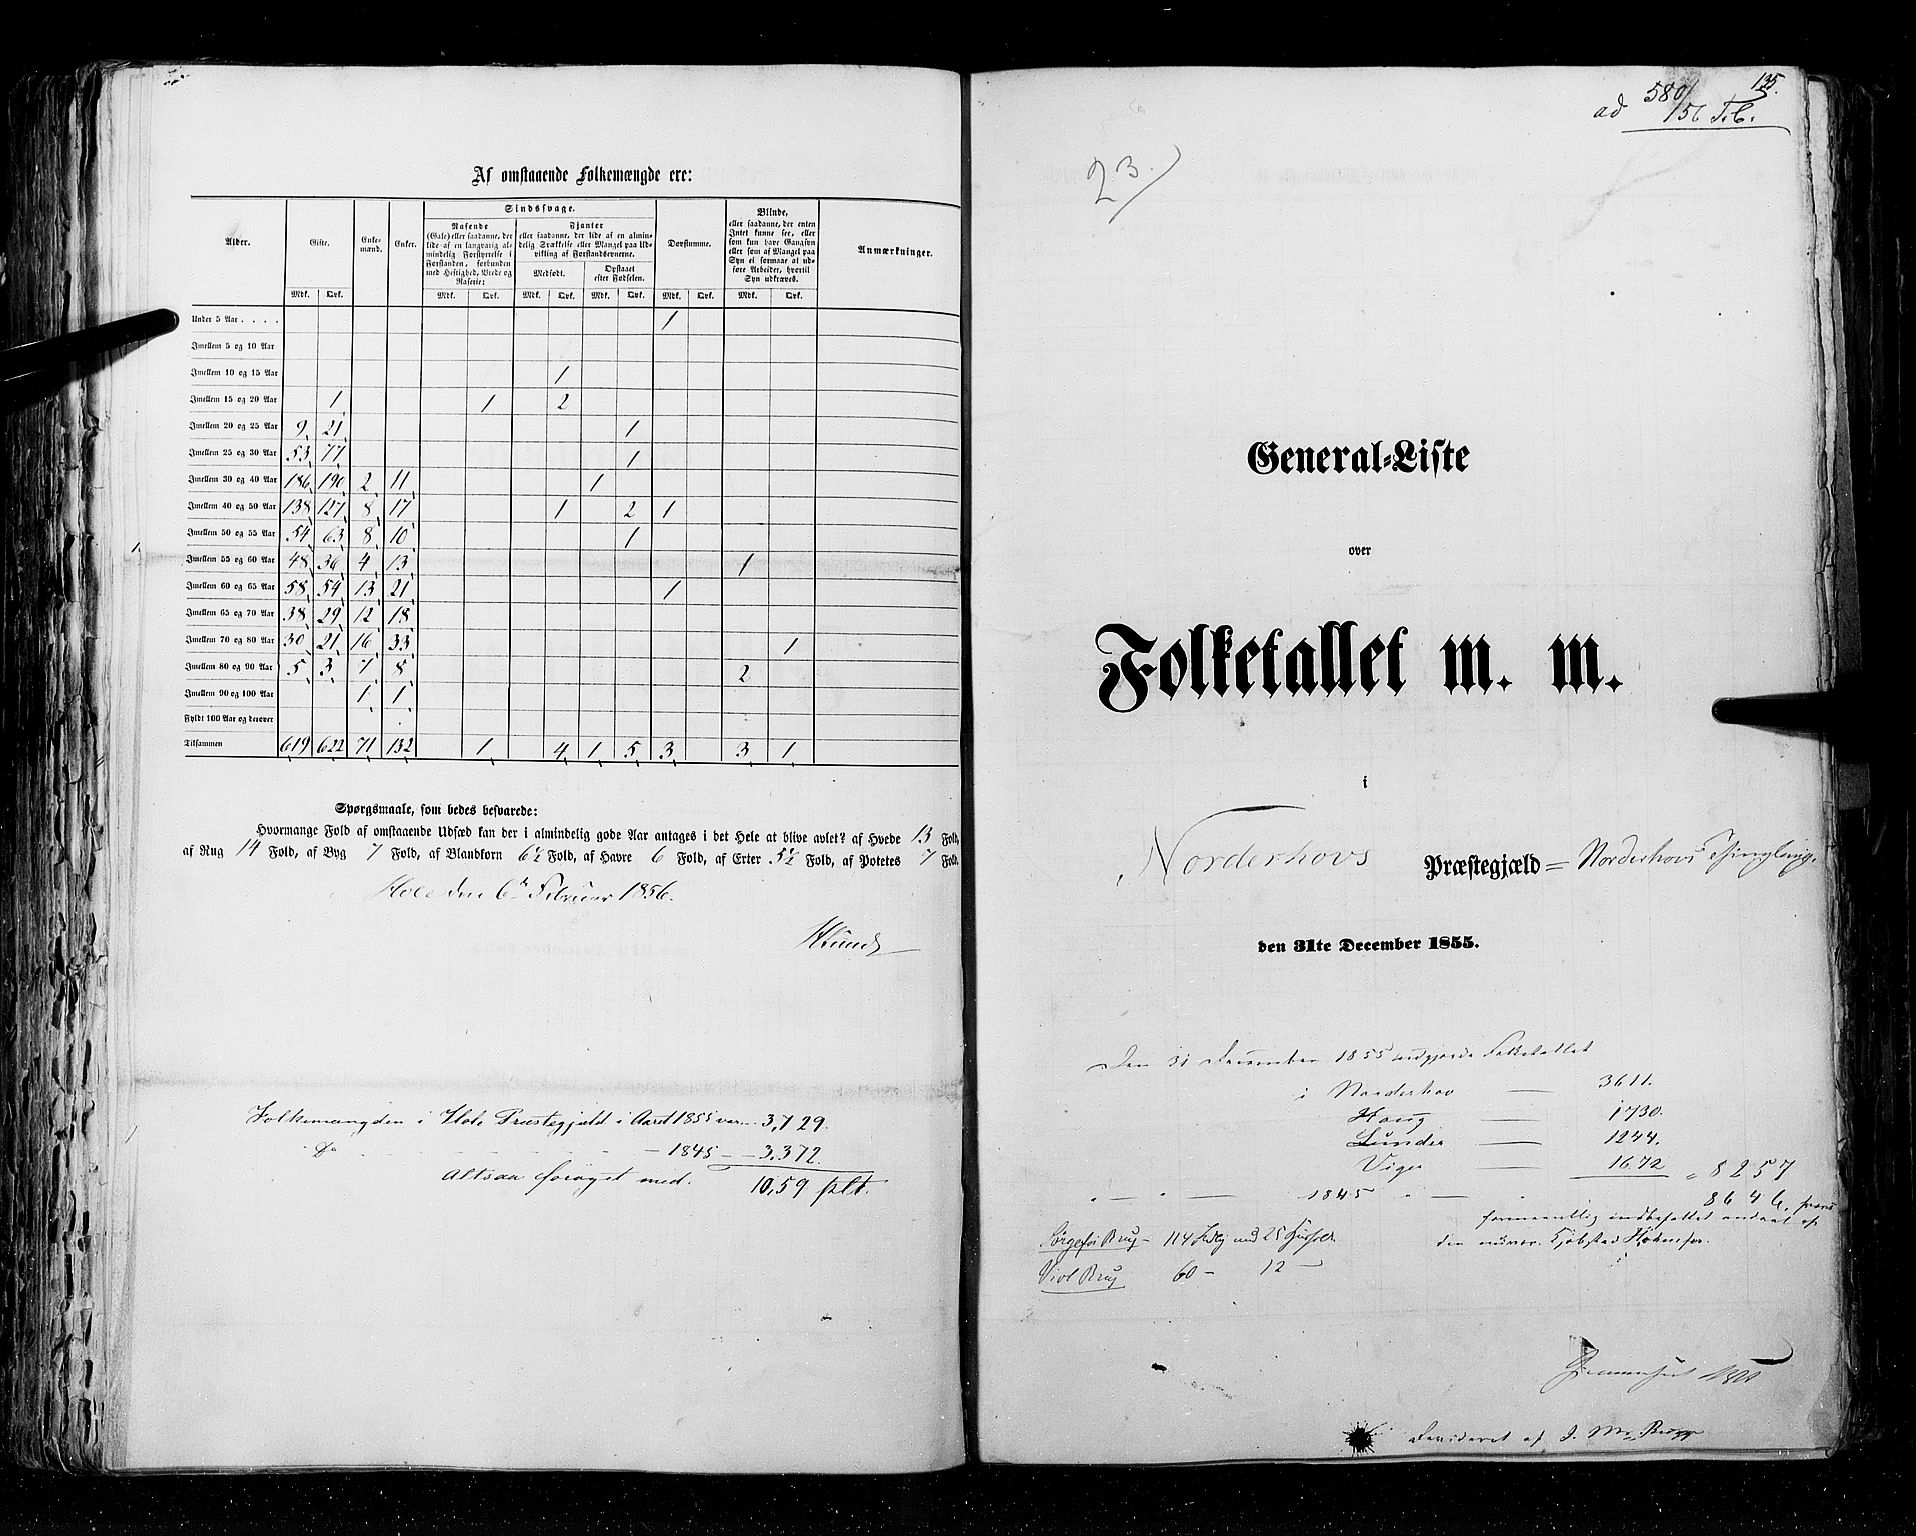 RA, Folketellingen 1855, bind 2: Kristians amt, Buskerud amt og Jarlsberg og Larvik amt, 1855, s. 135